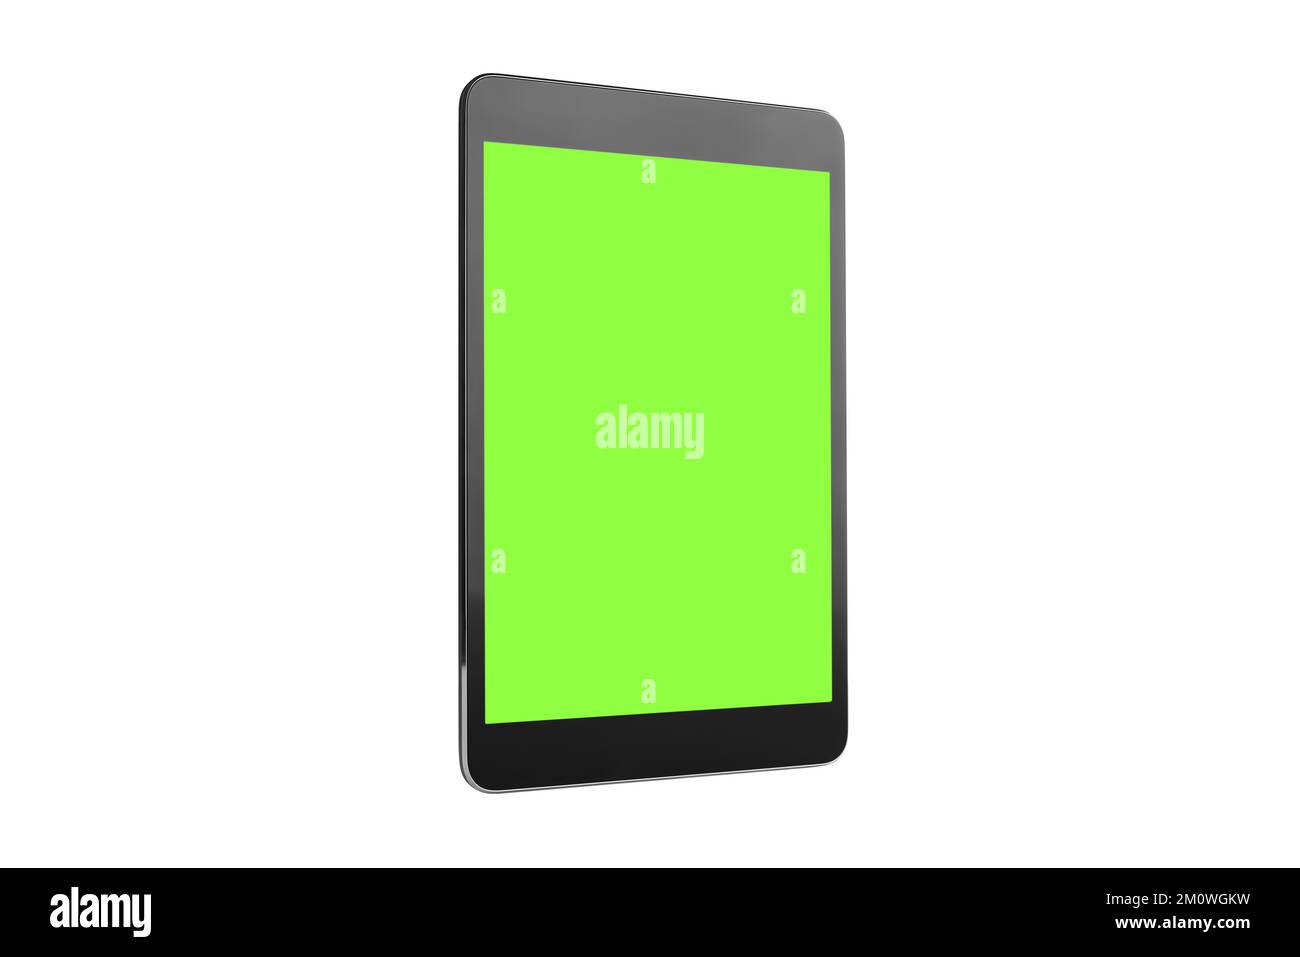 Maquette de tablette numérique avec écran Chroma Key isolé sur fond blanc, basée sur un concept de conception sans cadre et de prise de vue en studio de haute qualité Banque D'Images